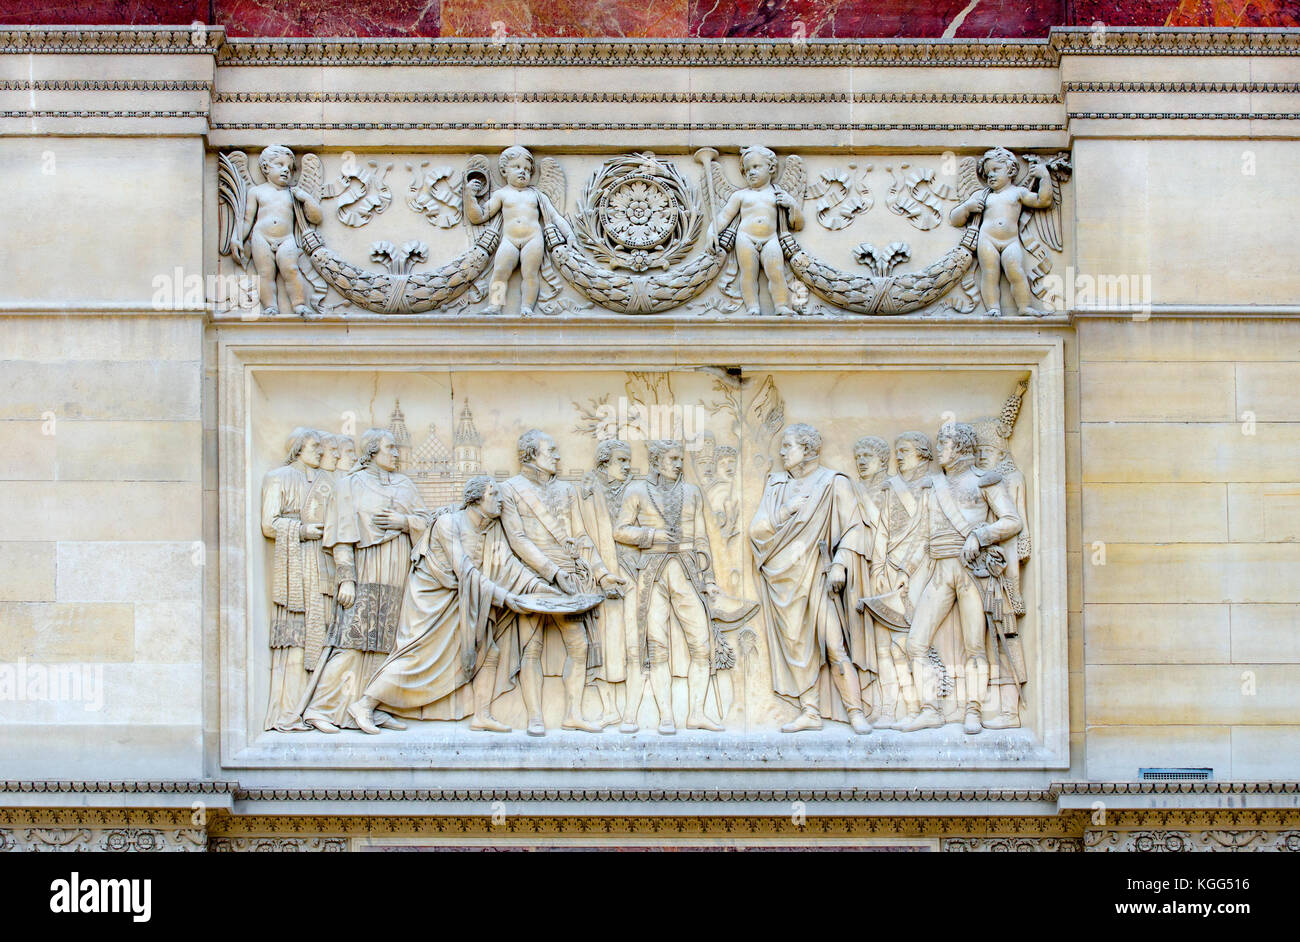 Parigi, Francia. Arc de triomphe du Carrousel (1808 - Place du giostra) bassorilievo in marmo rosa: Napoleone entrando in Vienna (da Louis-Pierre Deseine) Foto Stock